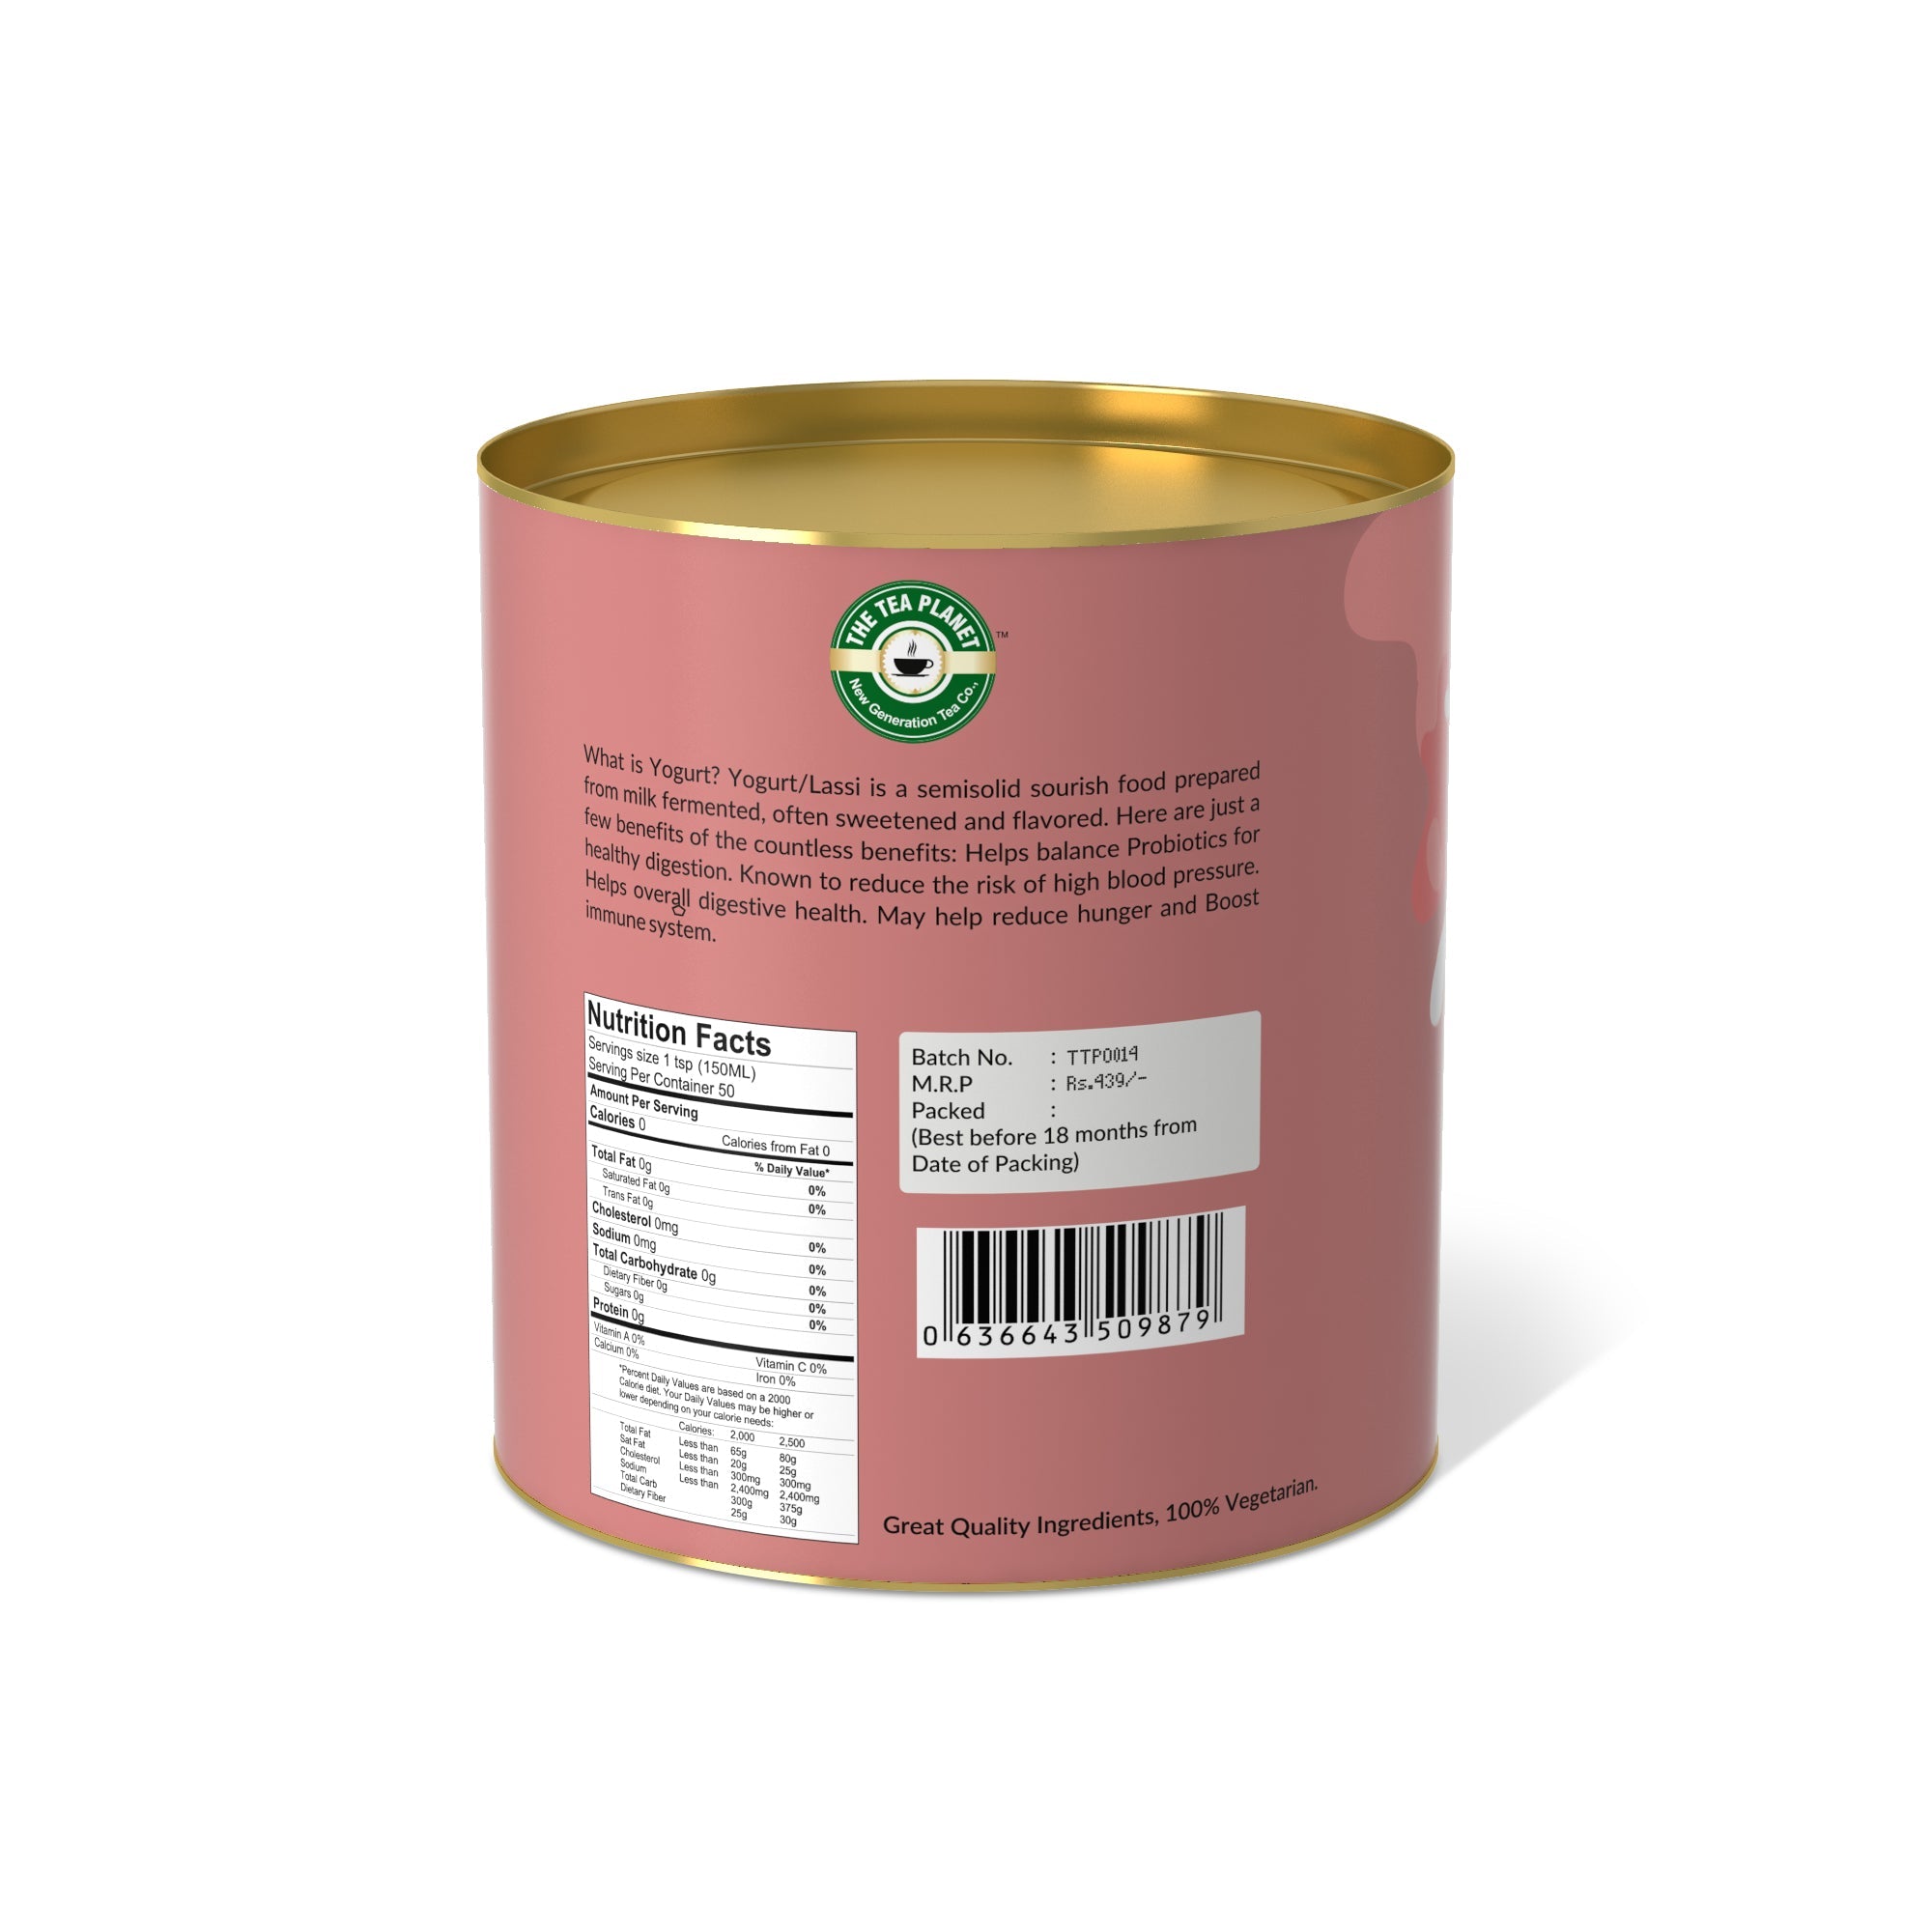 Lychee Yogurt Mix - 250 gms